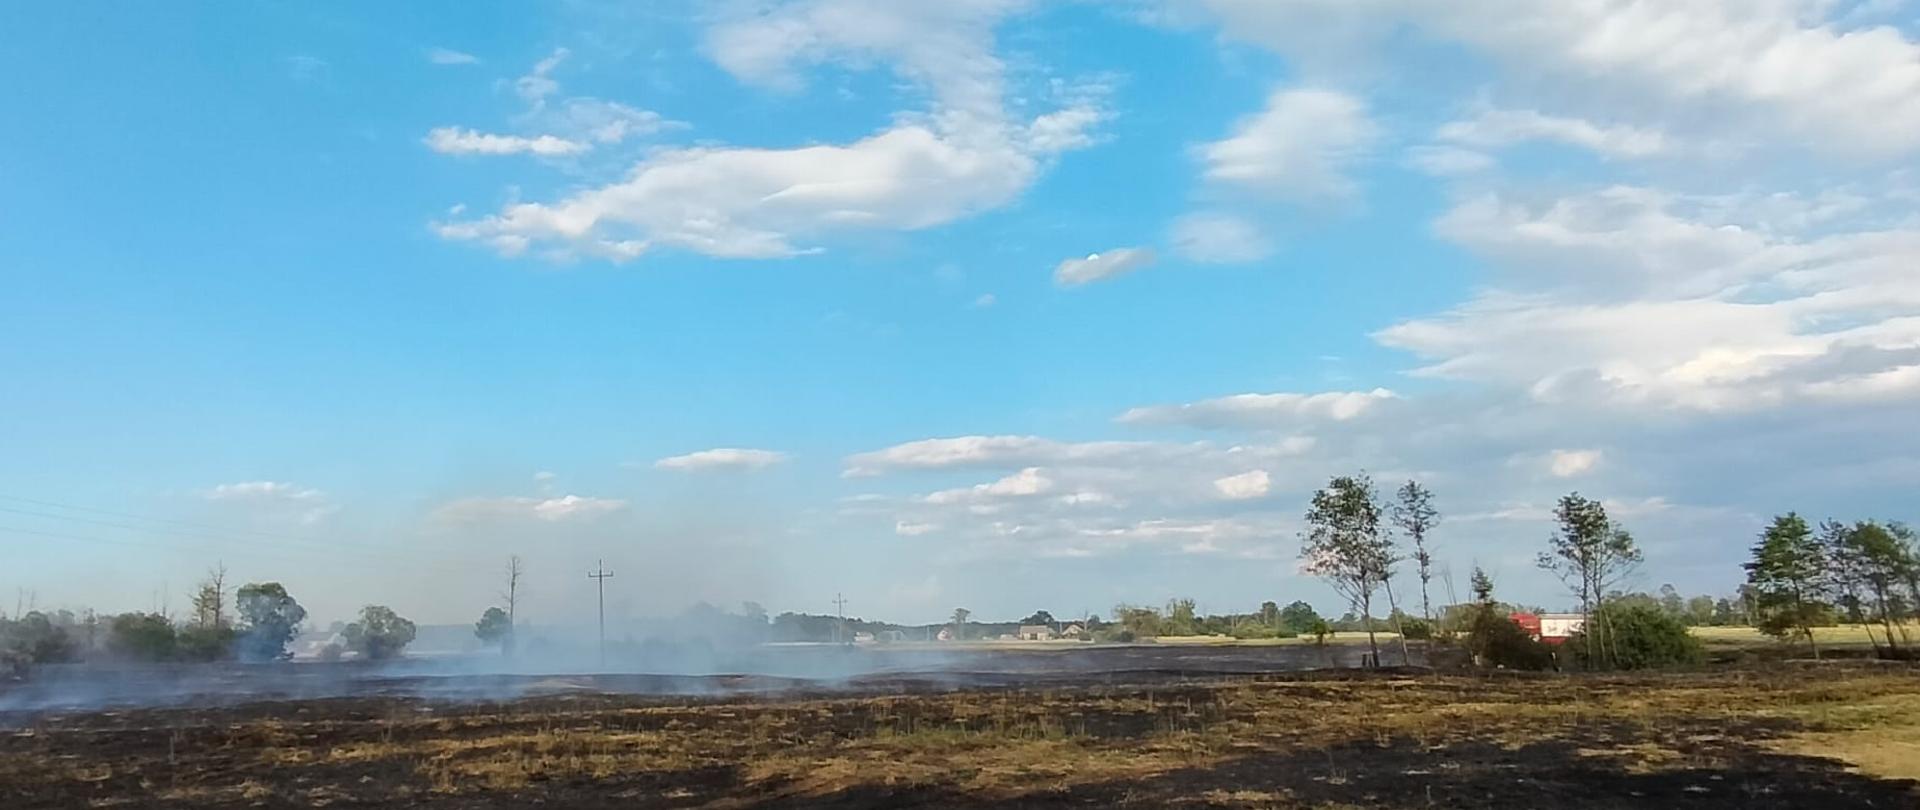 Zdjęcie przedstawia spaloną trawę na nieużytkach